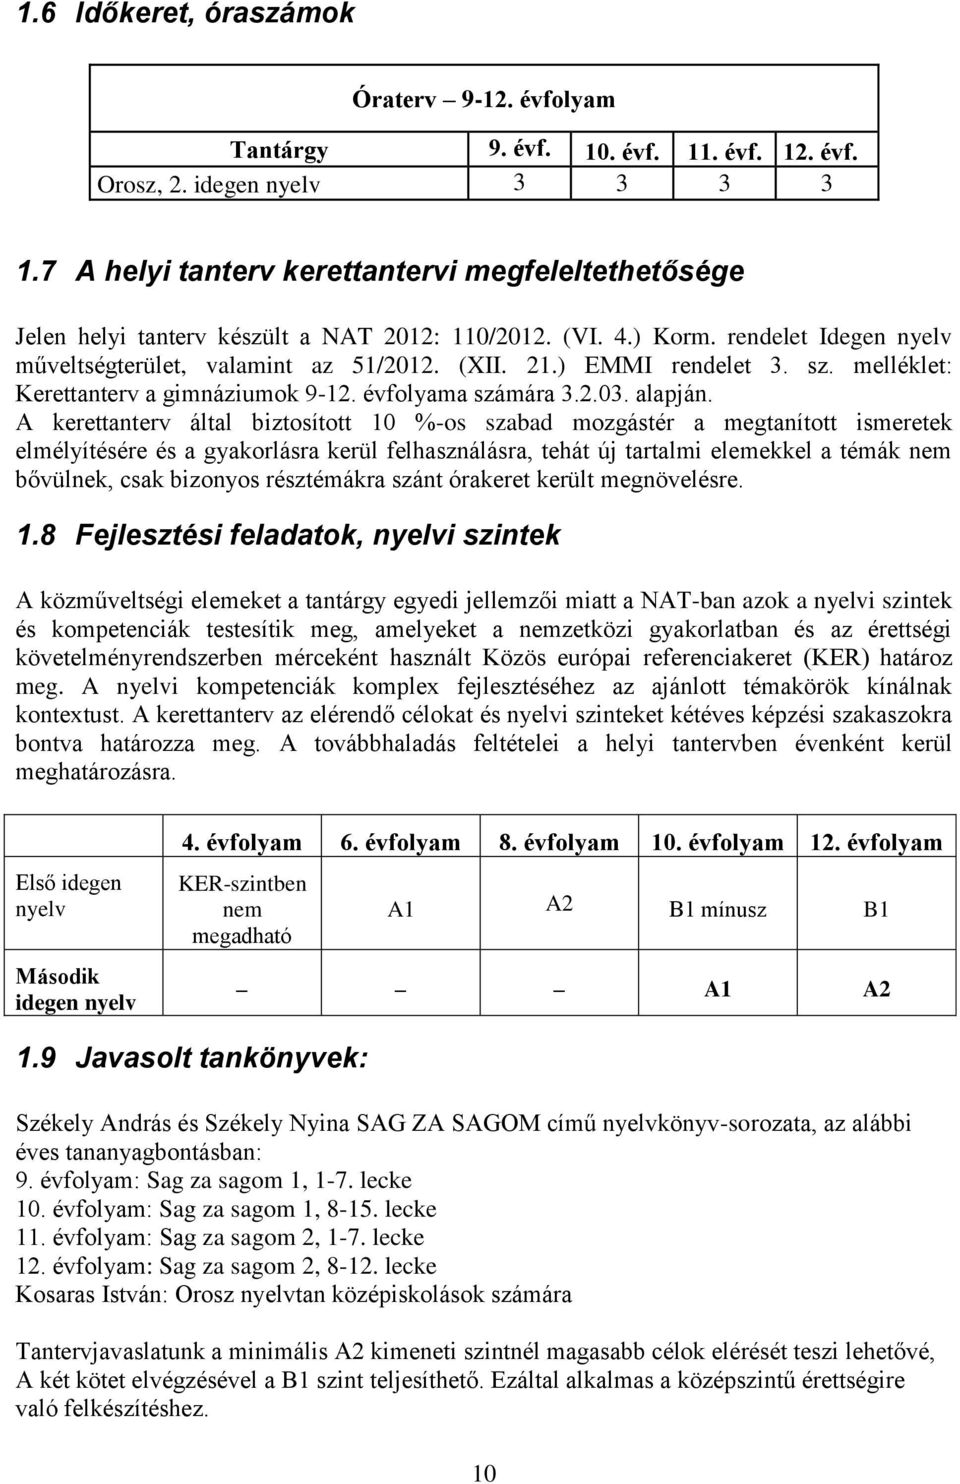 ) EMMI rendelet 3. sz. melléklet: Kerettanterv a gimnáziumok 9-12. évfolyama számára 3.2.03. alapján.